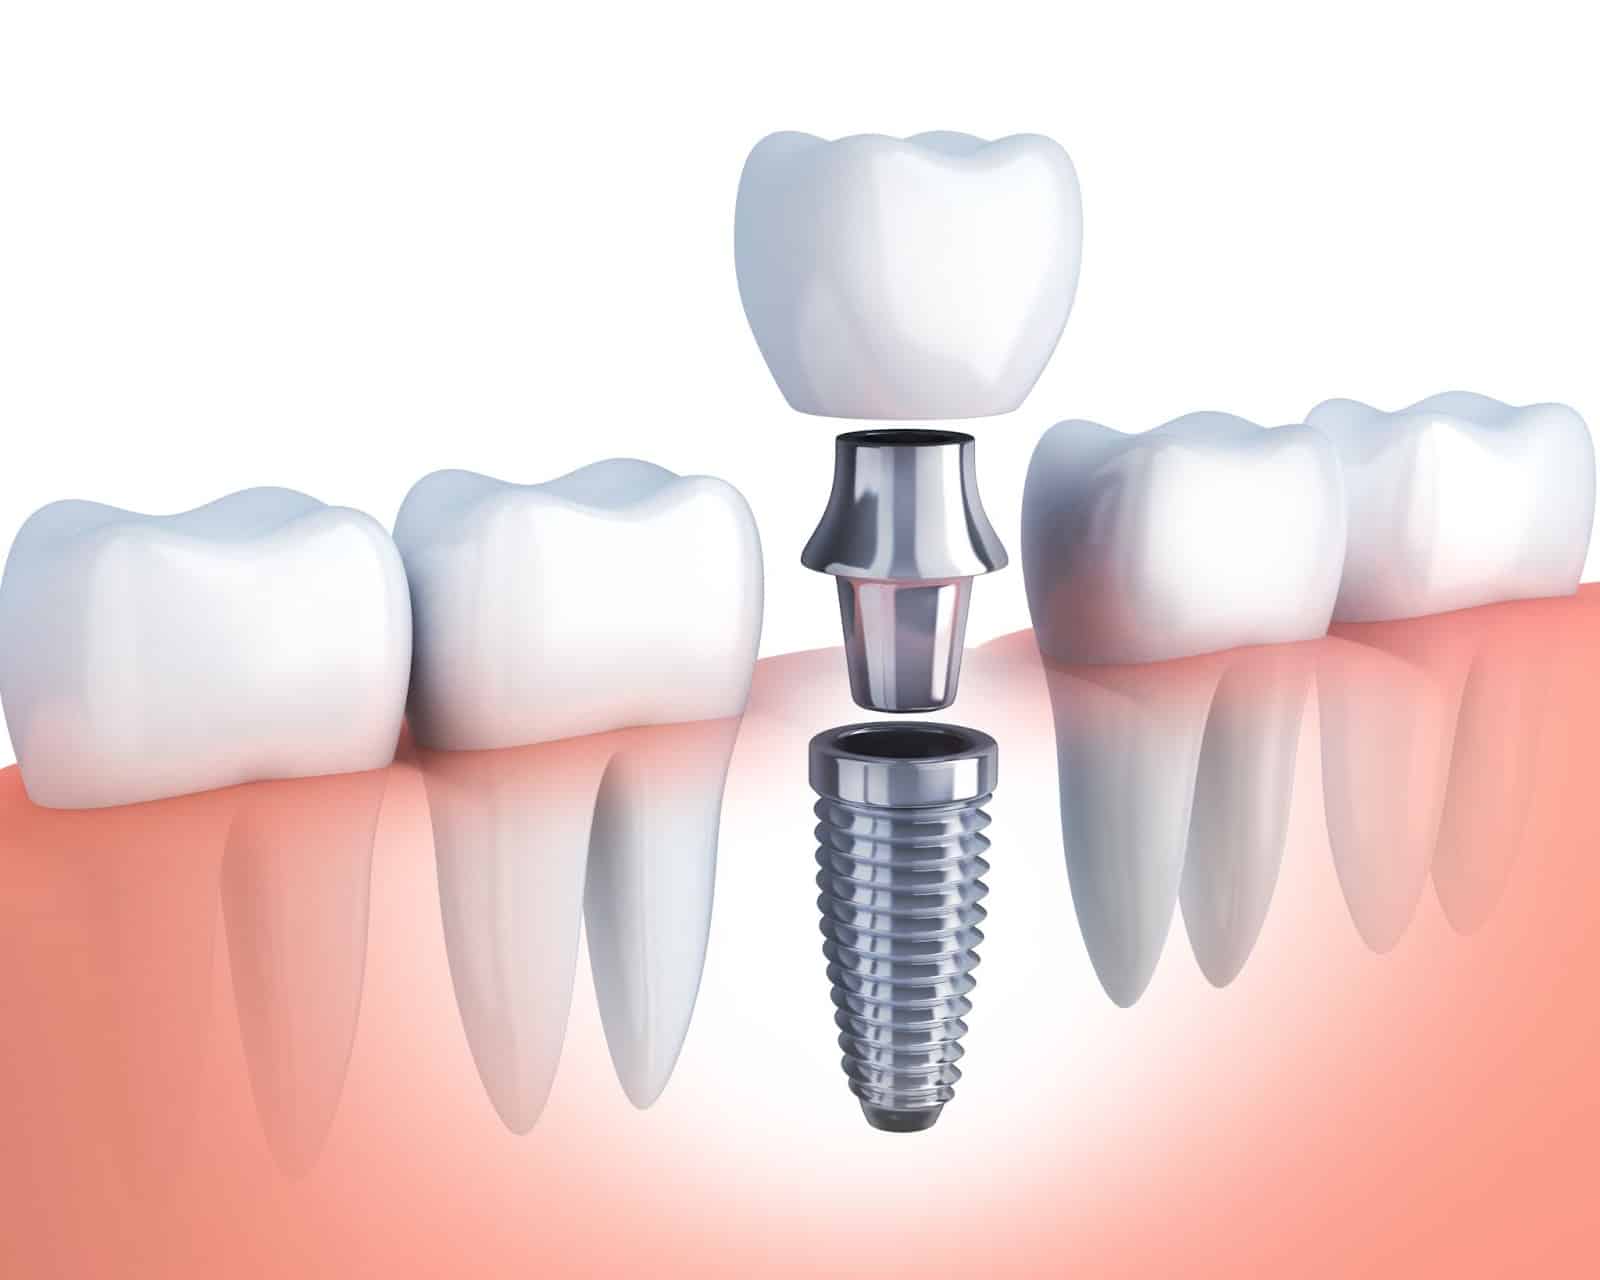 Dental-Implants-A-Solution-to-Your-Missing-Teeth Имплантация зубов: современные технологии и преимущества